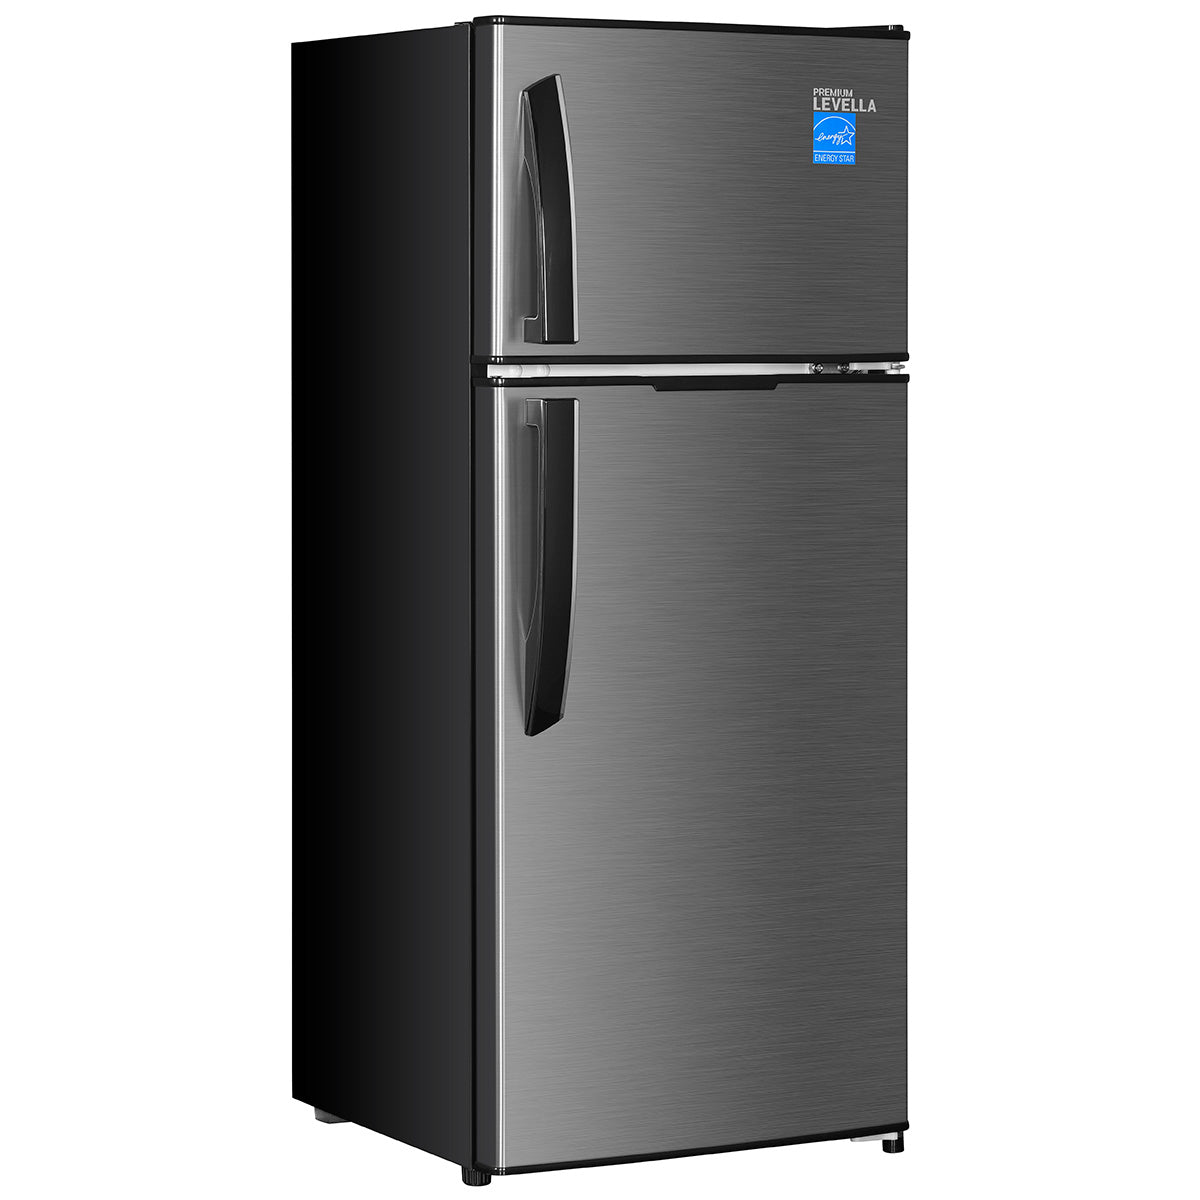 Premium Levella® 4.4 Cu. Ft. Refrigerator Black with Inox Door.